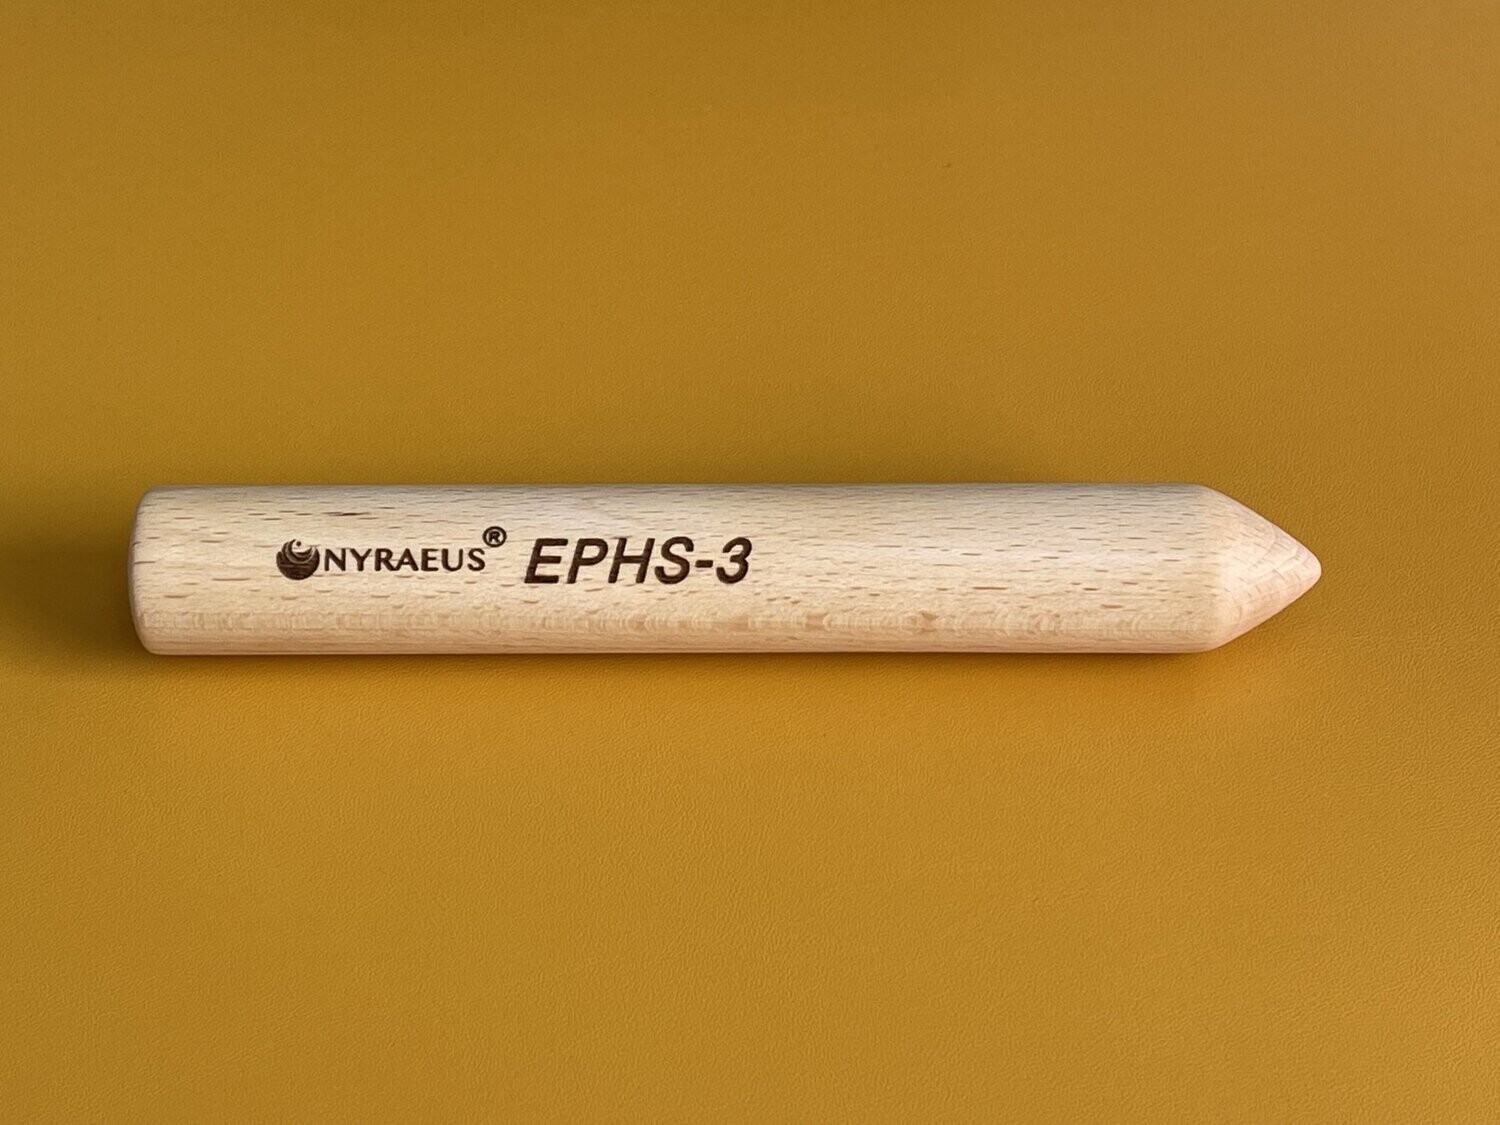 EPHS-3 (Energy-Pen-Health-System)